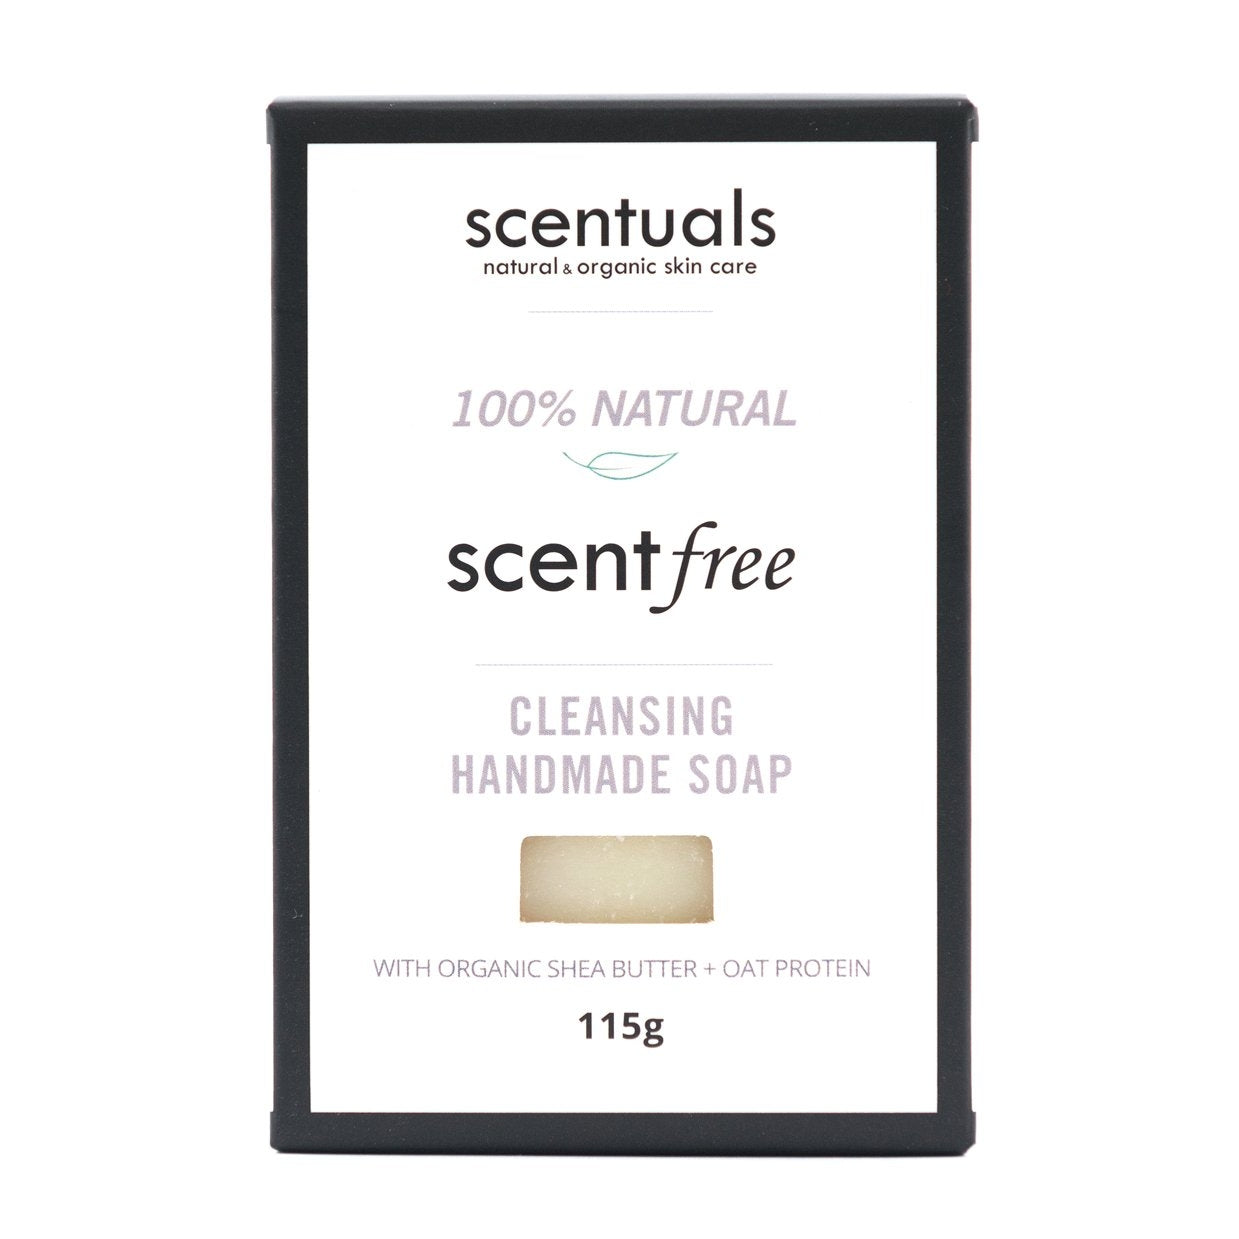 Scentuals - Scent free Bar Soap